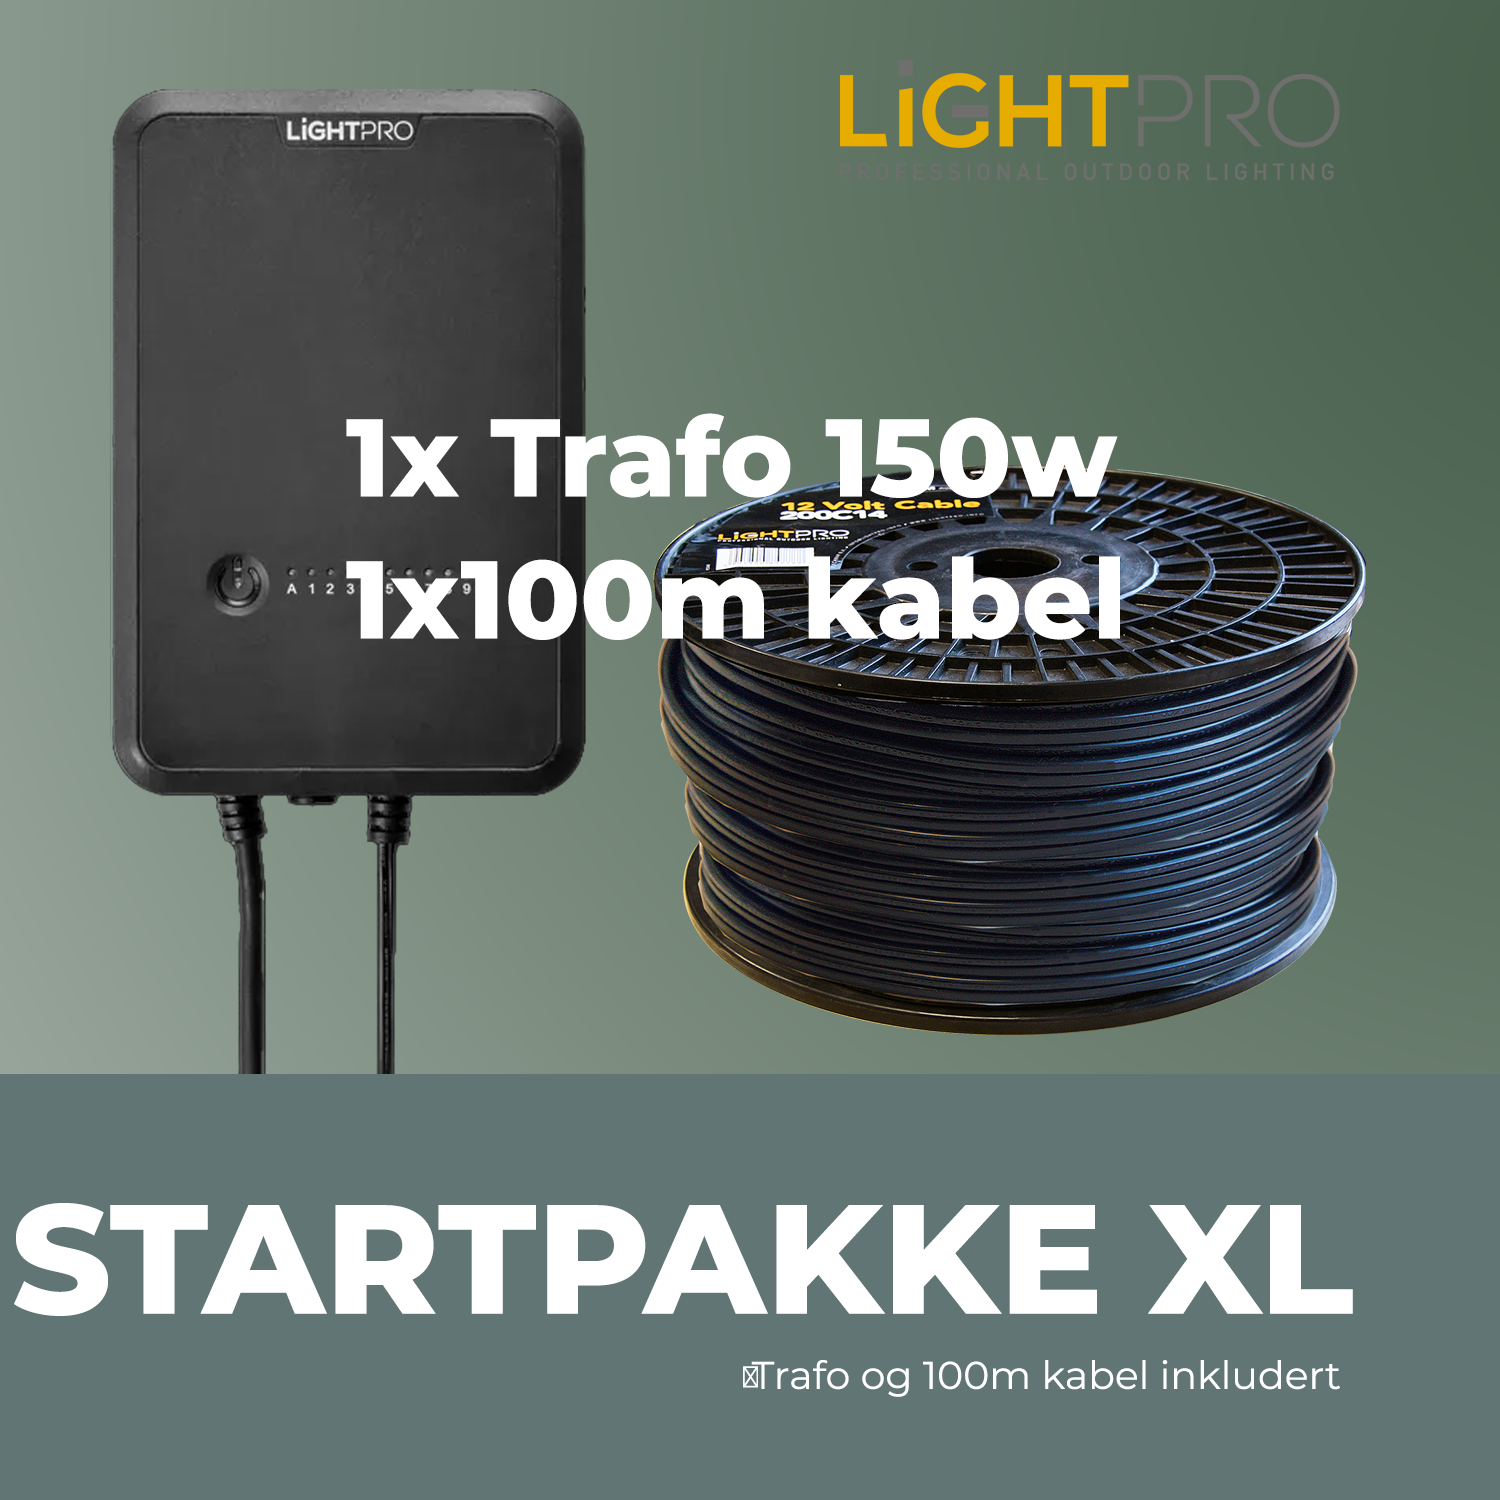 lightpro_startpakke XL